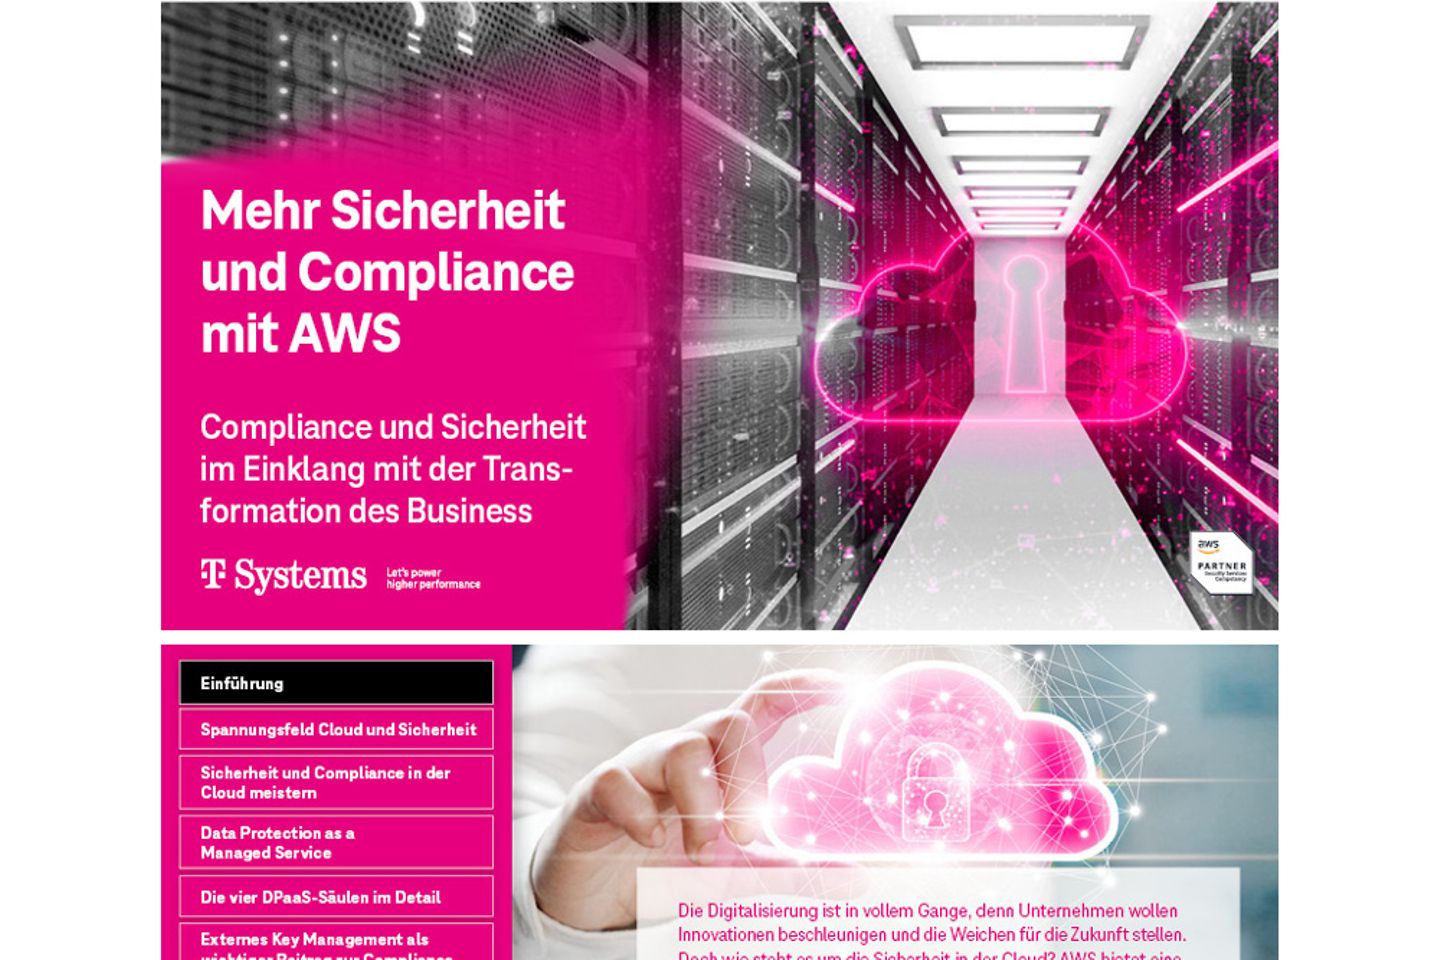 Titel- und Folgeseite des E-Books als Screenshot: Verbesserte Sicherheit und Compliance auf AWS